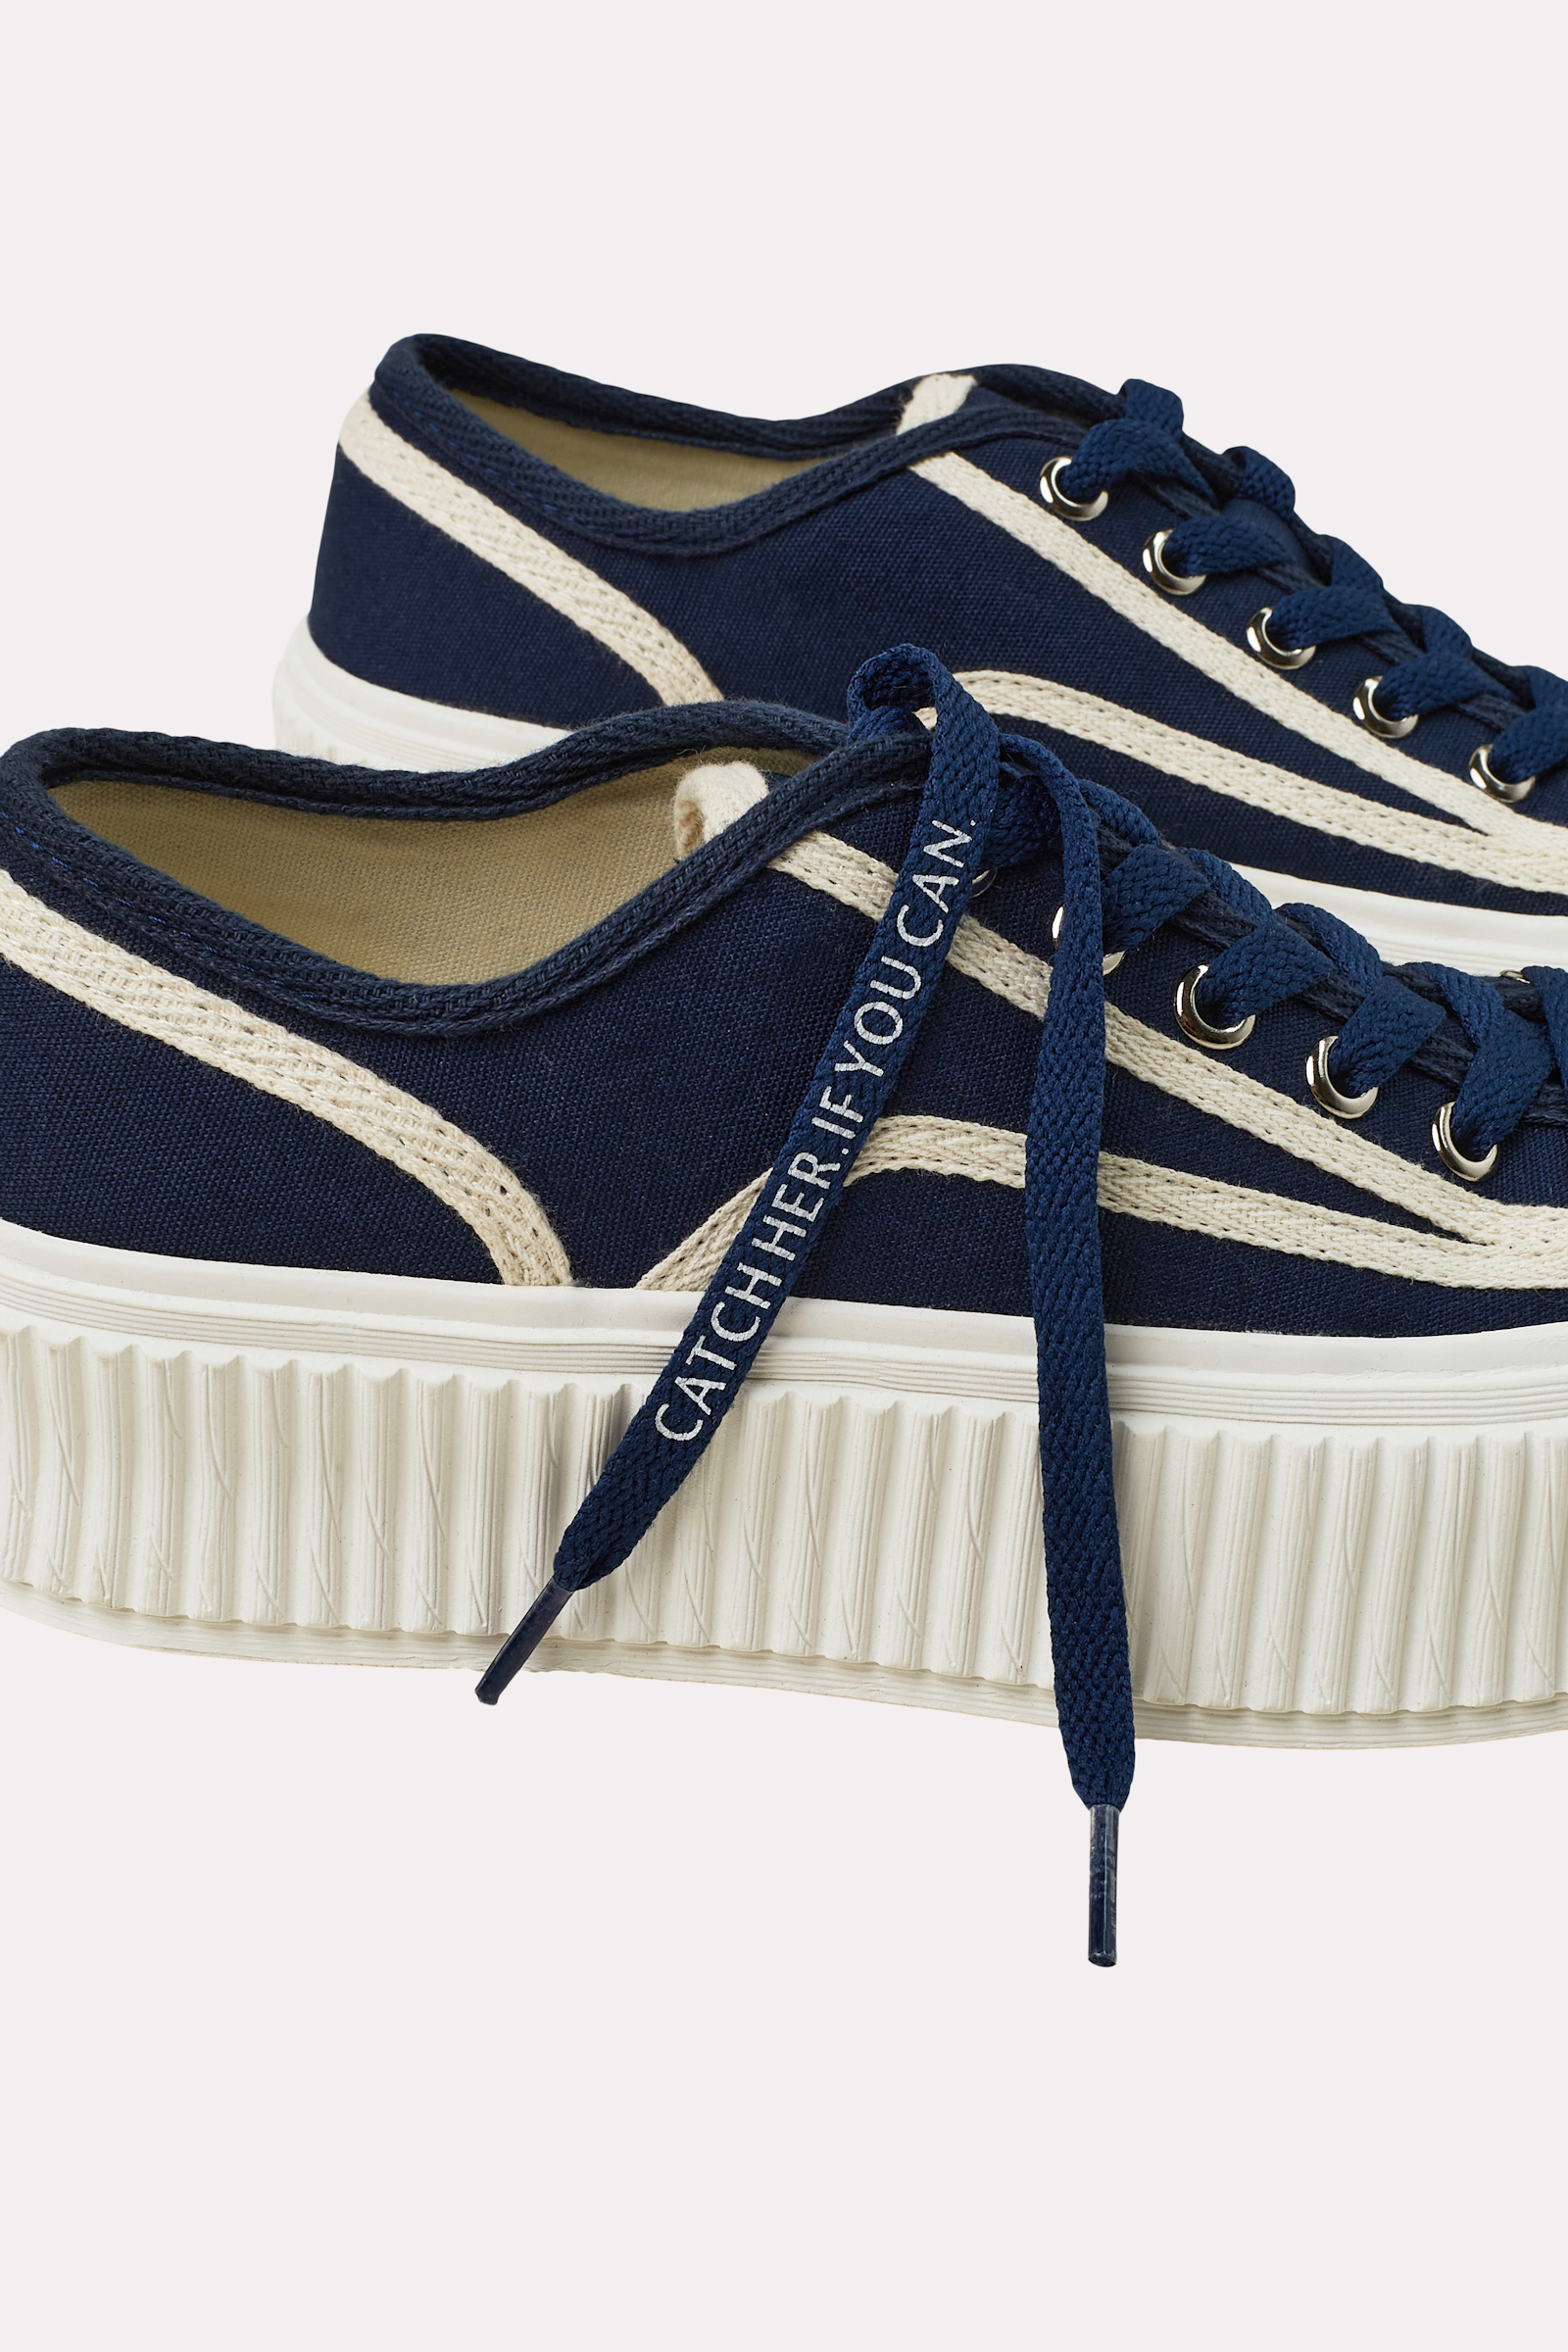 Dorothee Schumacher Cotton canvas platform sneakers dark blue